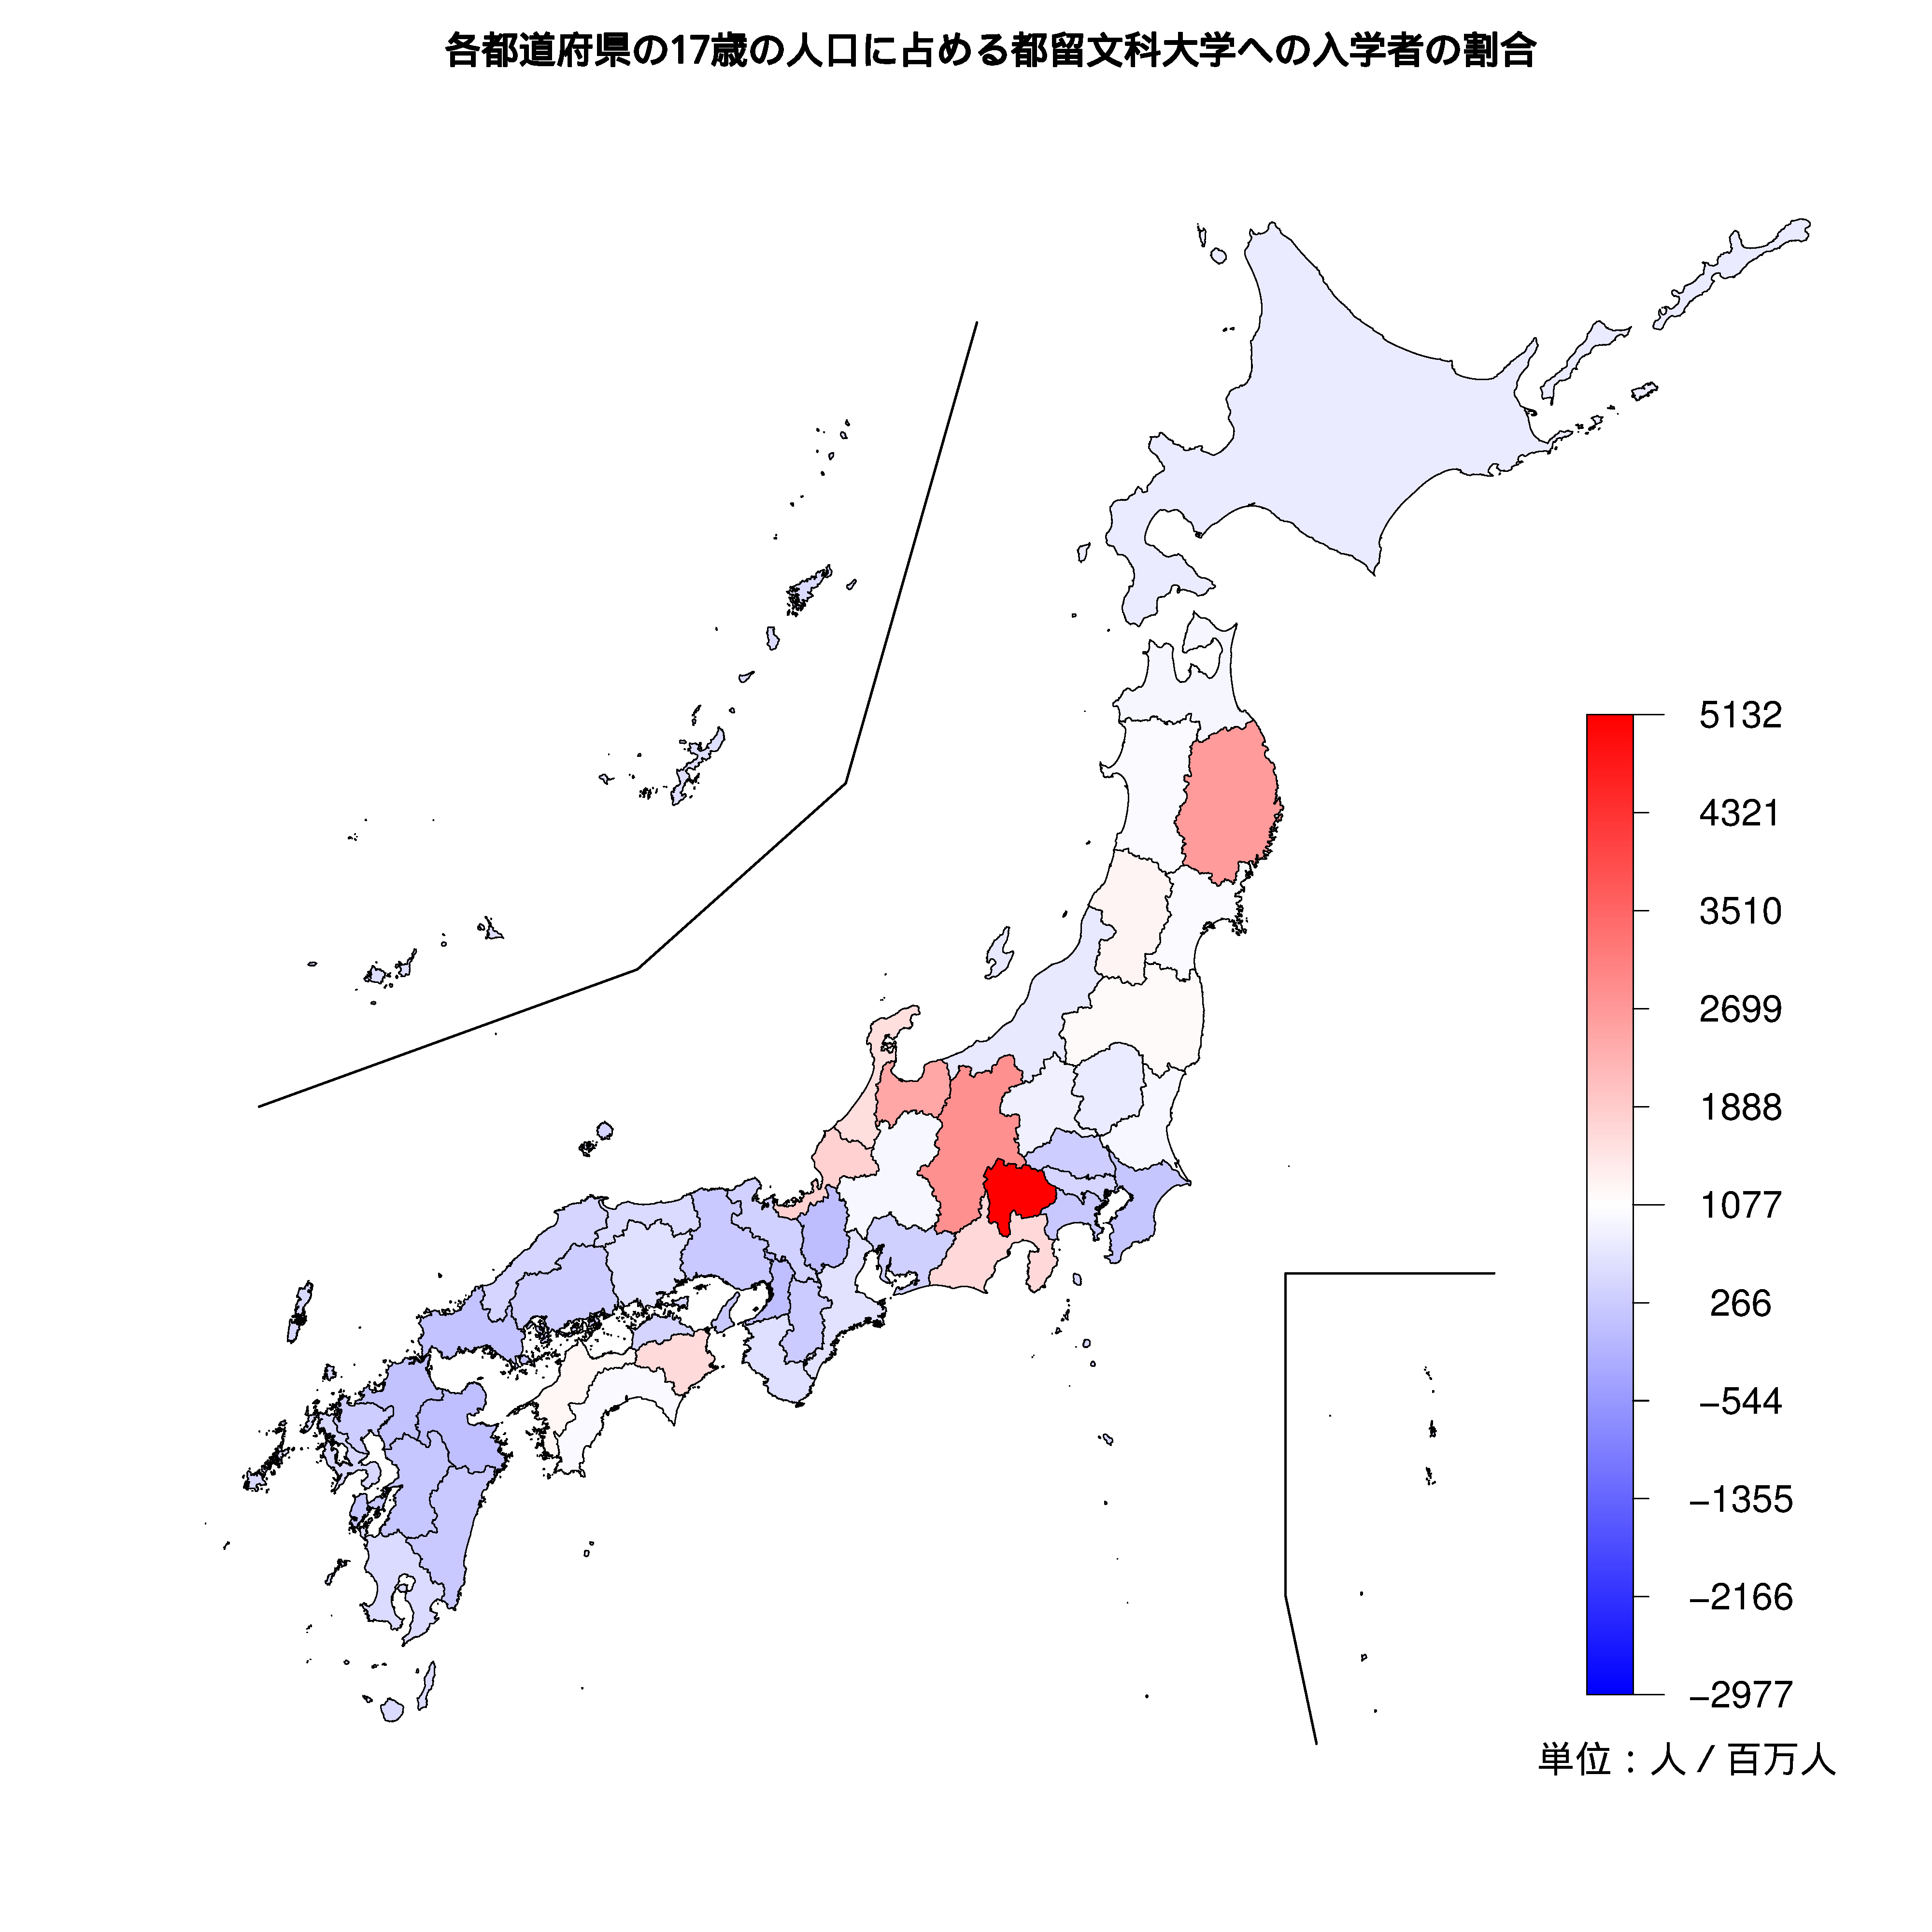 都留文科大学への入学者が多い都道府県の色分け地図